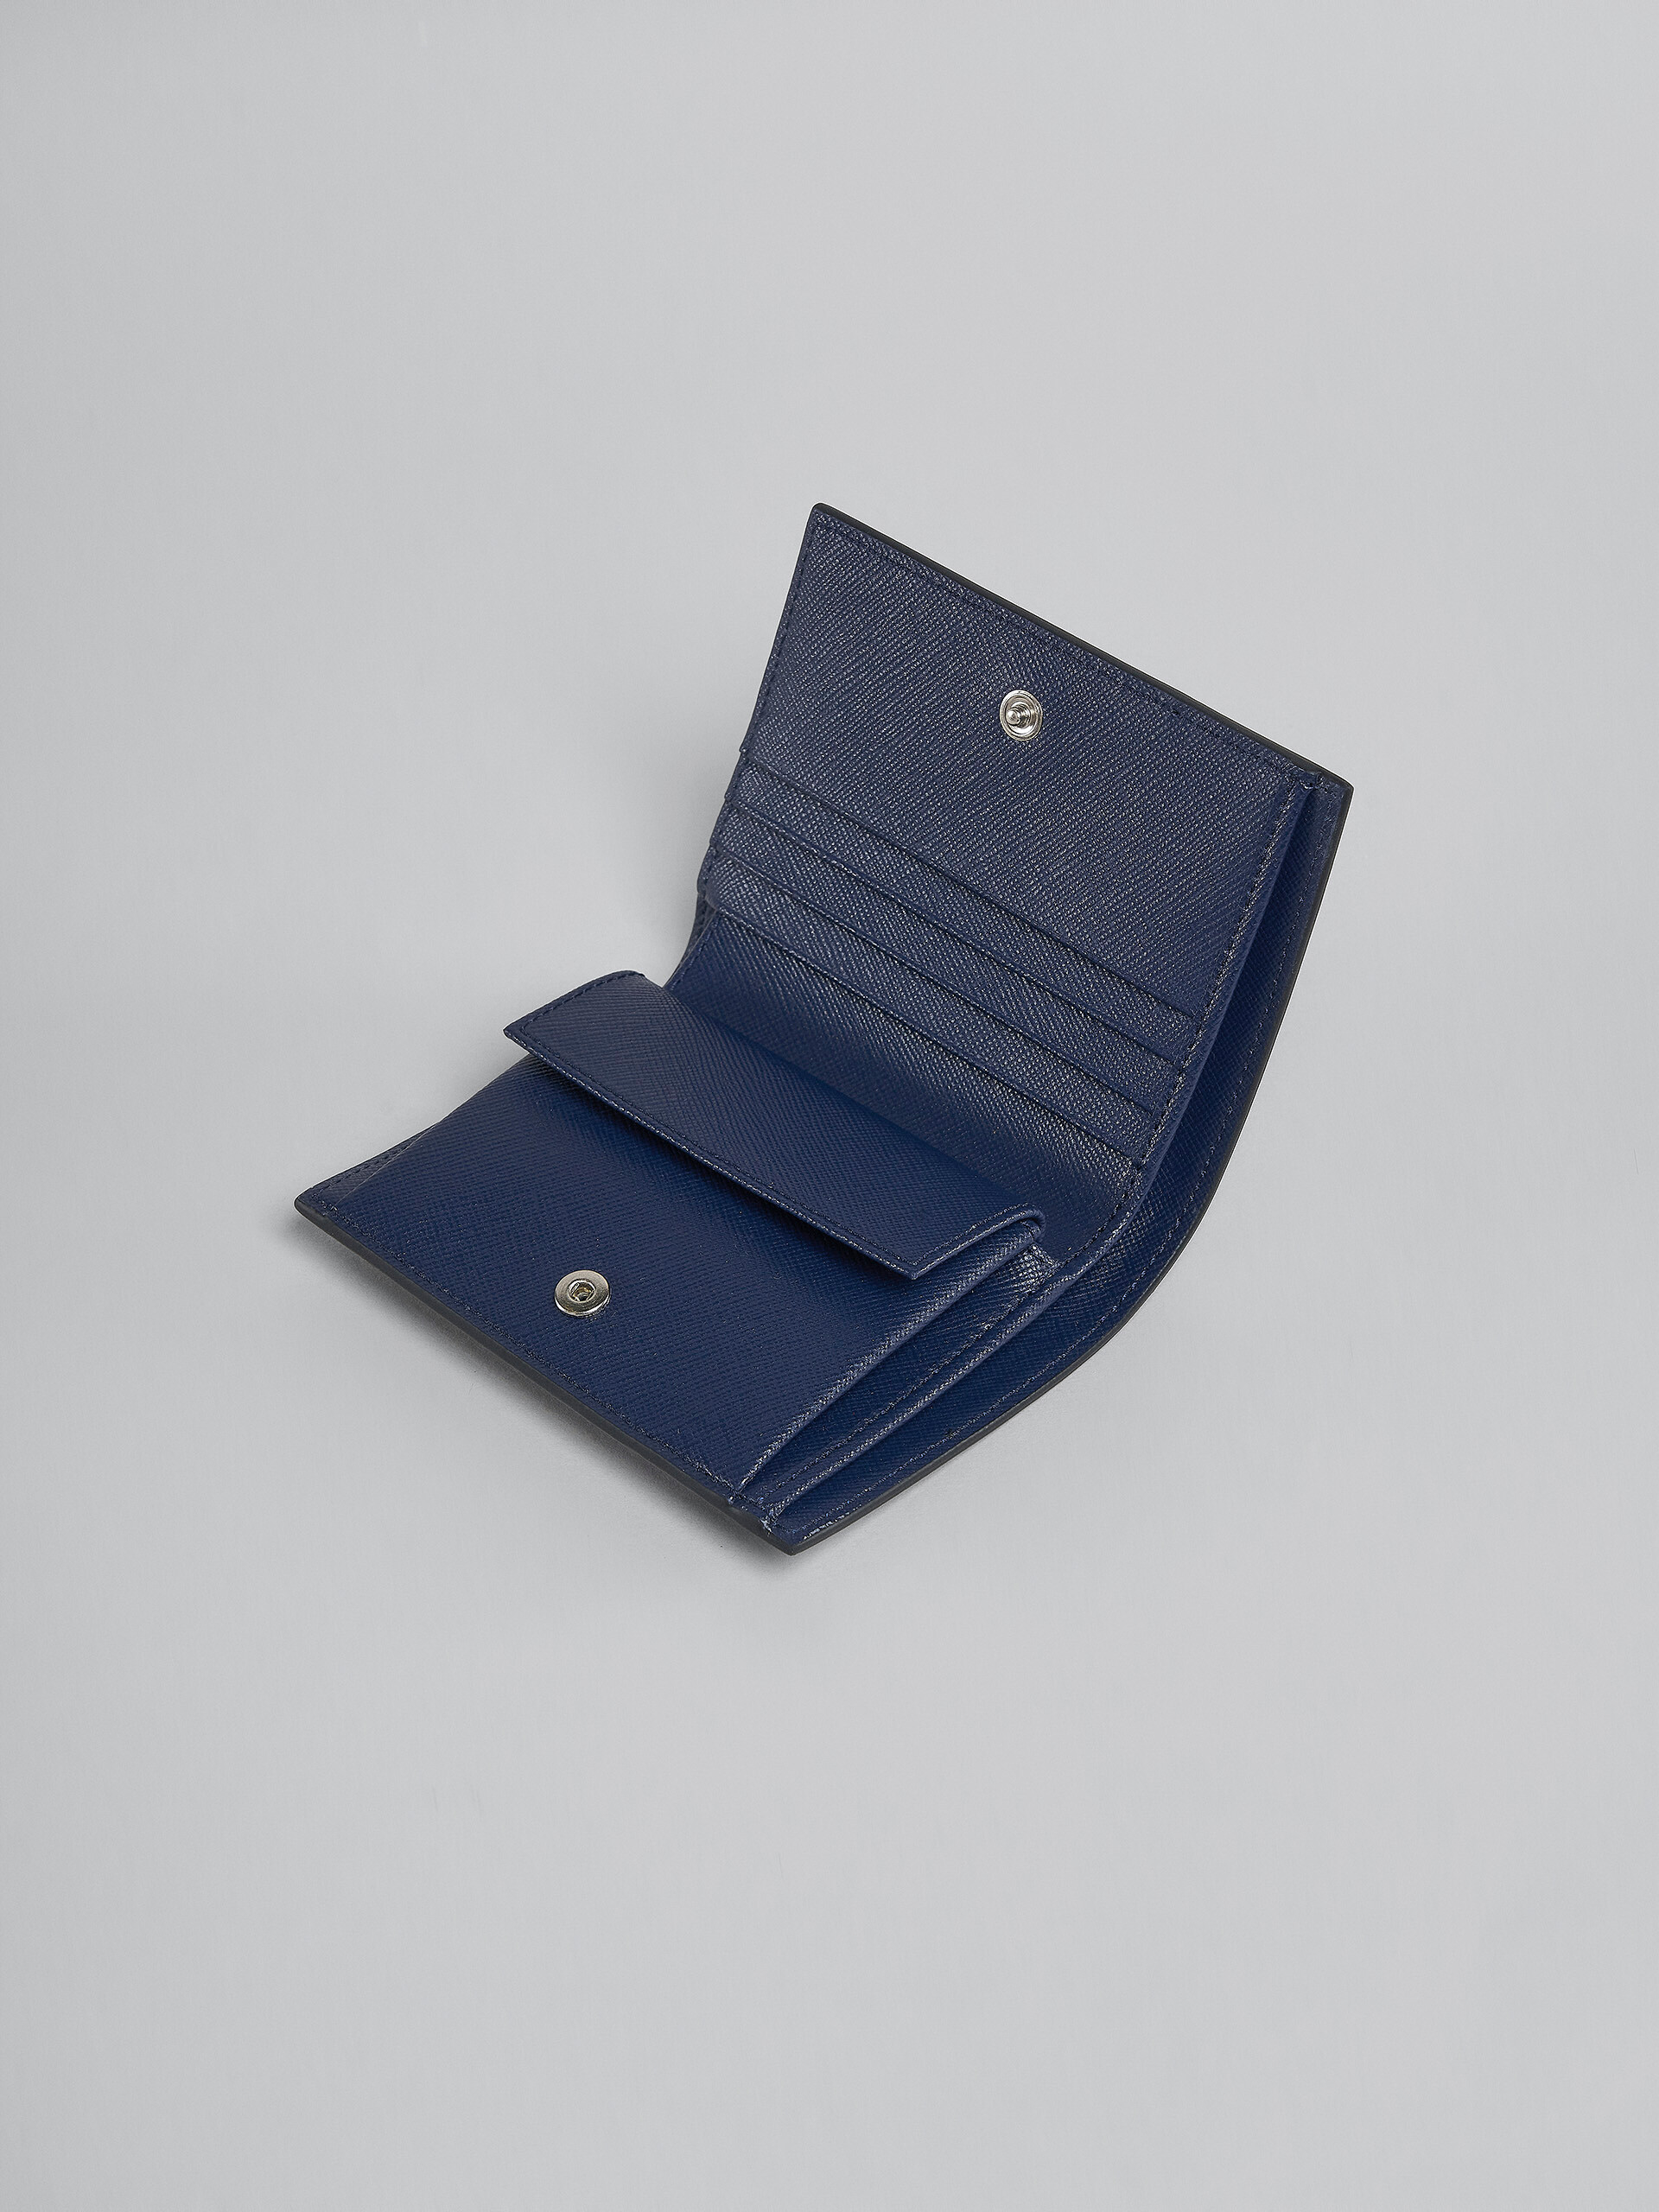 Portafoglio bi-fold in pelle saffiano nera - Portafogli - Image 4